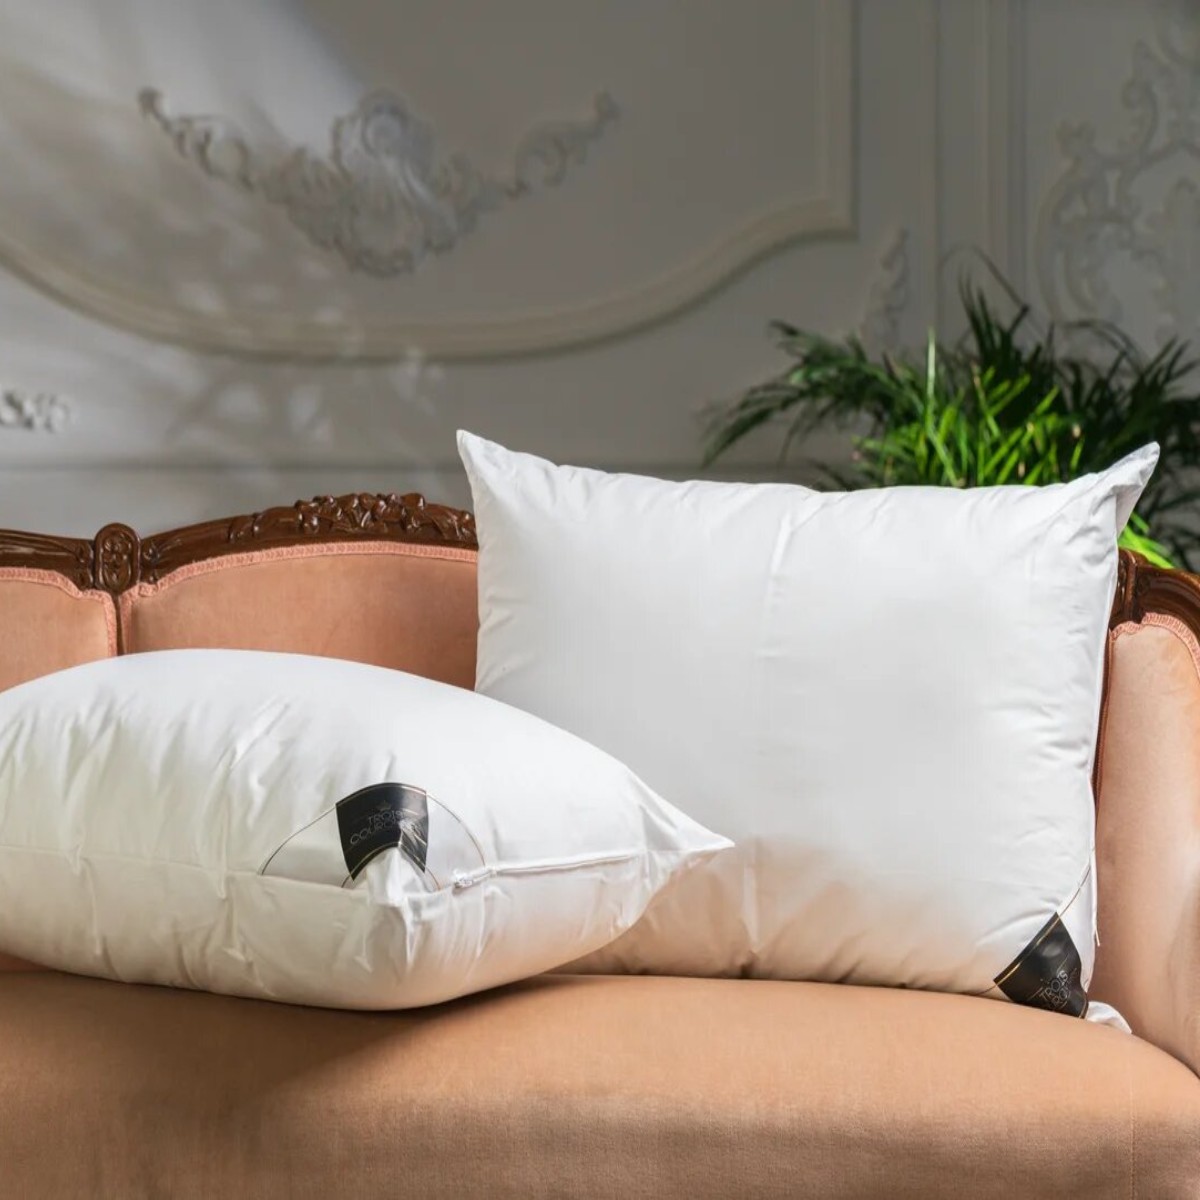 Купить подушку прямоугольную. Подушка белый. Подушка прямоугольная для сна. Подушка для сна белая. Белая подушка в интерьере.